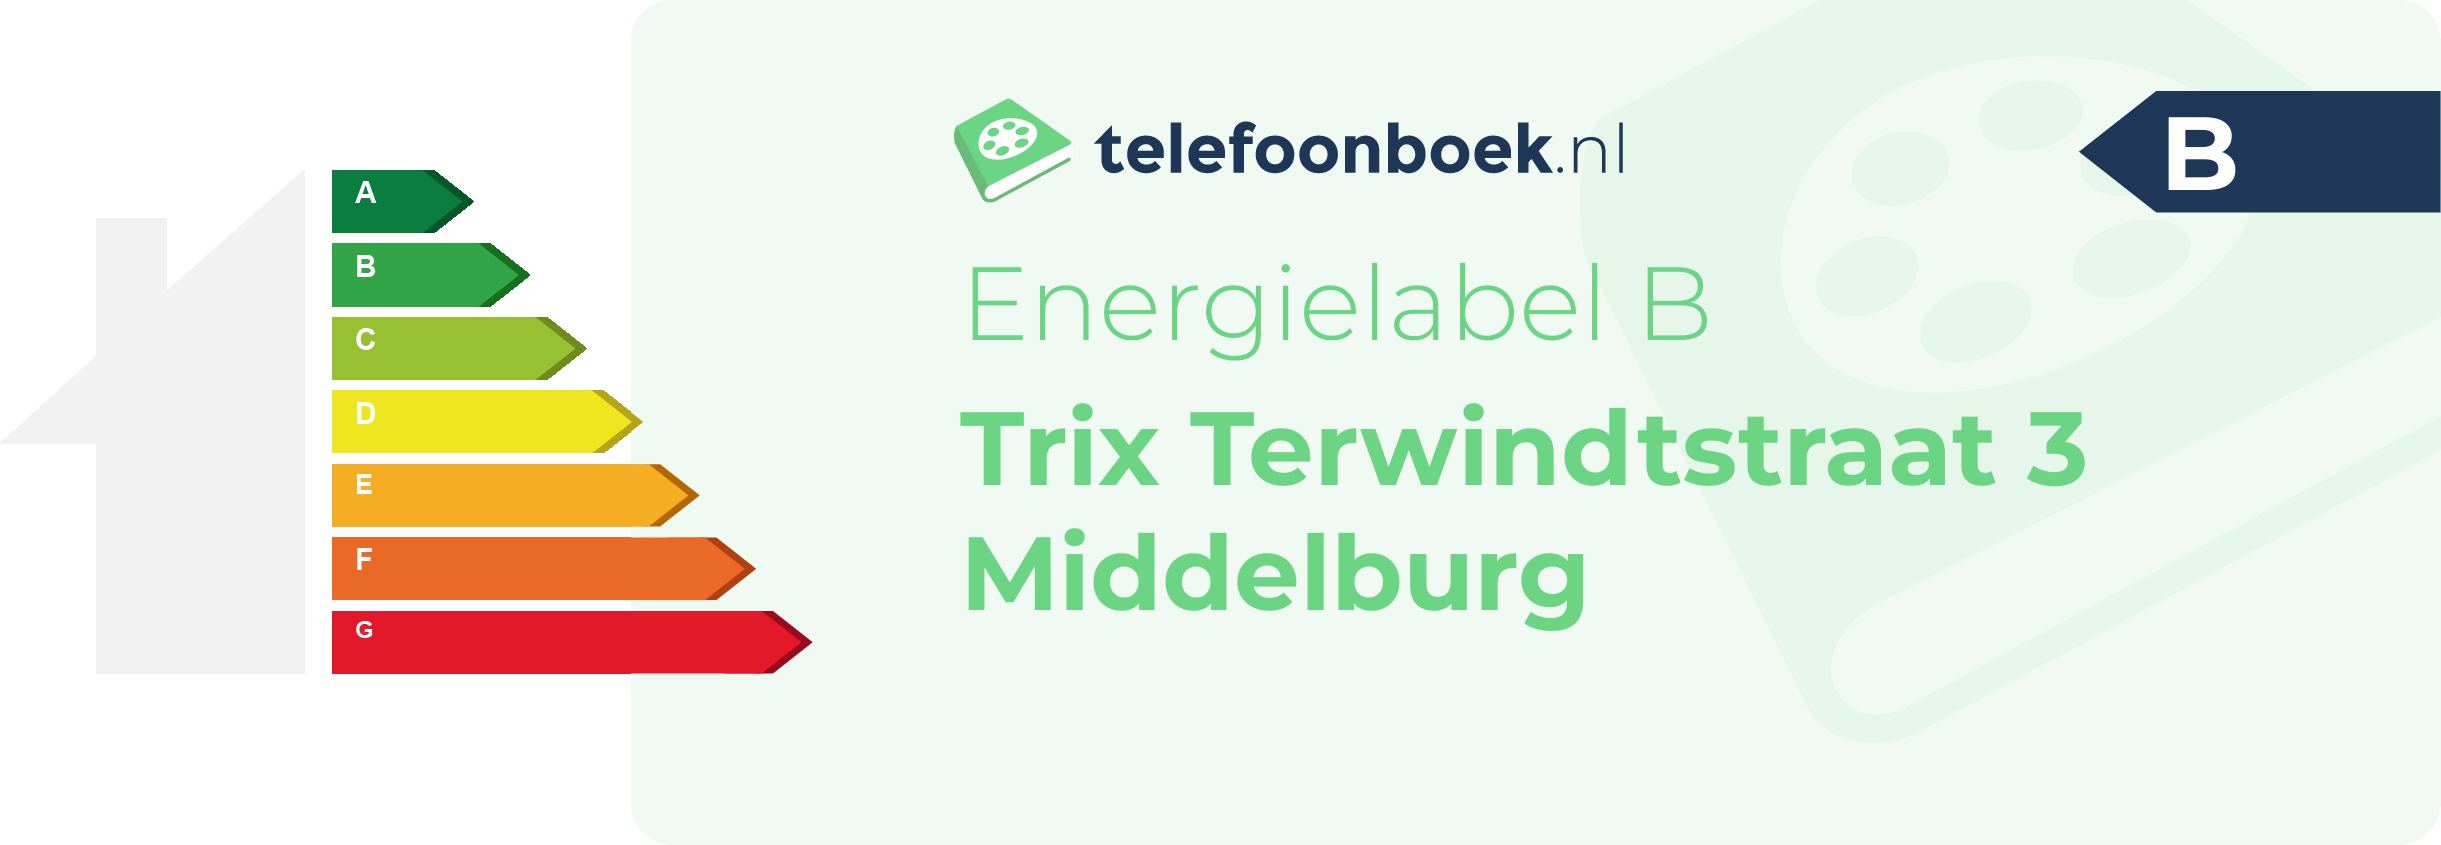 Energielabel Trix Terwindtstraat 3 Middelburg